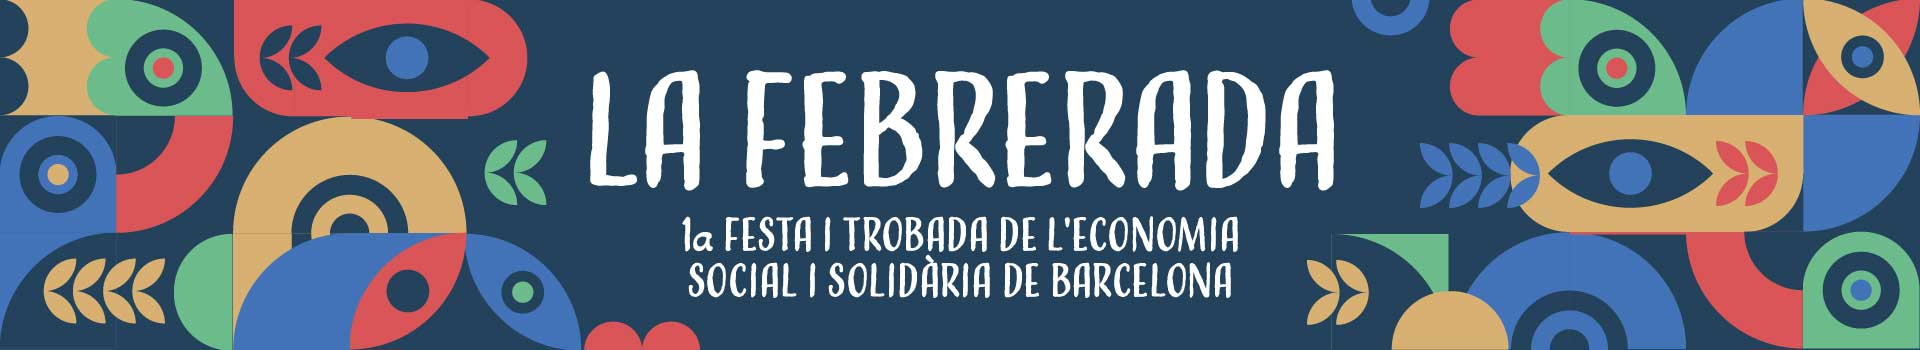 1a festa i trobada de l'Economia Social i Solidària de Barcelona